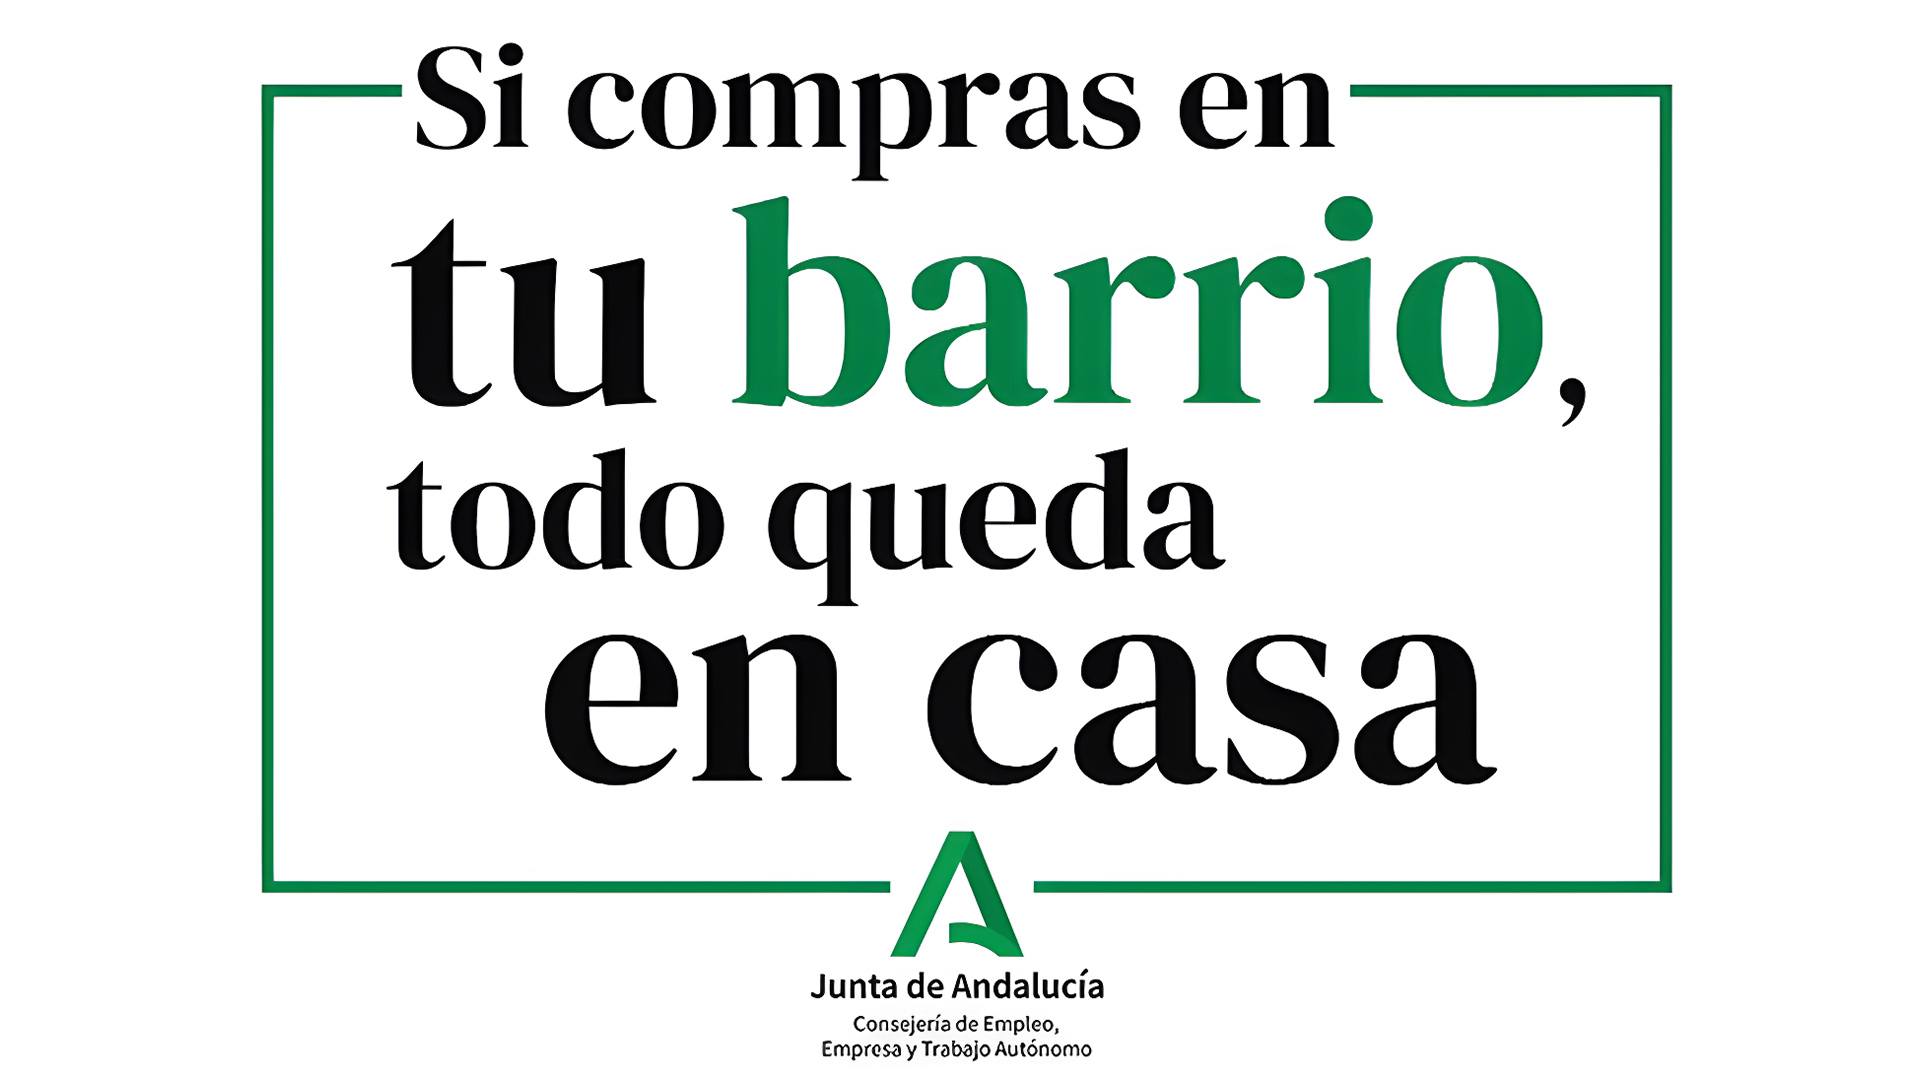 La Junta de Andalucía lanza una campaña publicitaria en apoyo al comercio de proximidad